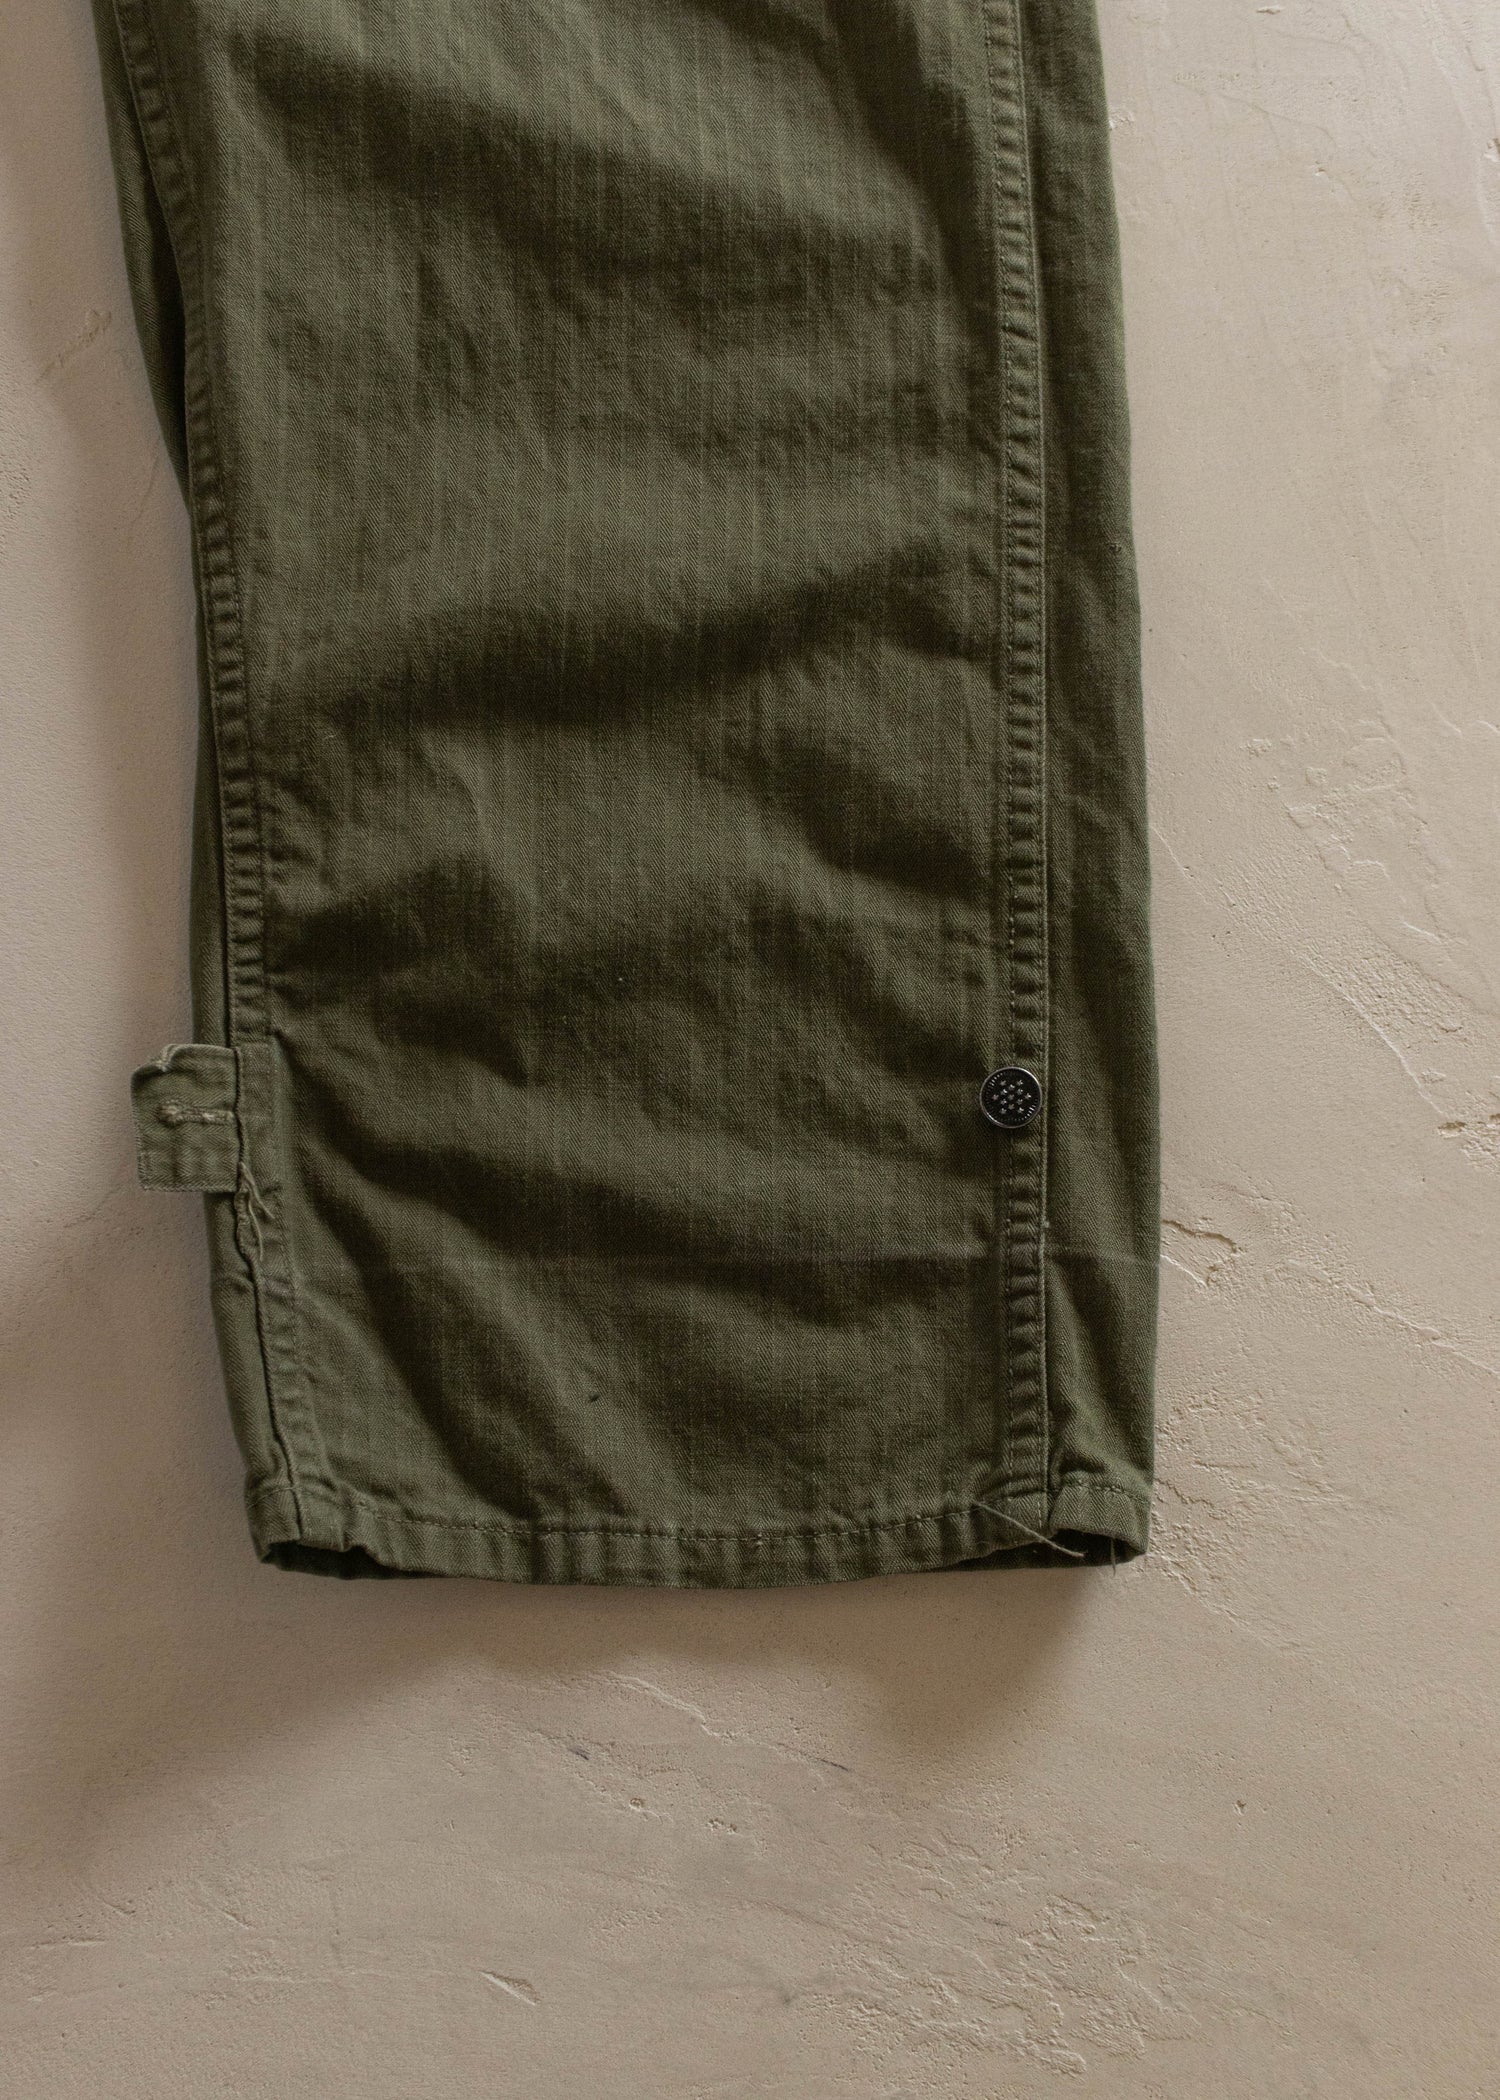 ◇セール特価品◇ 40s US Military Twill Pants Size W33 L31 setonda.com